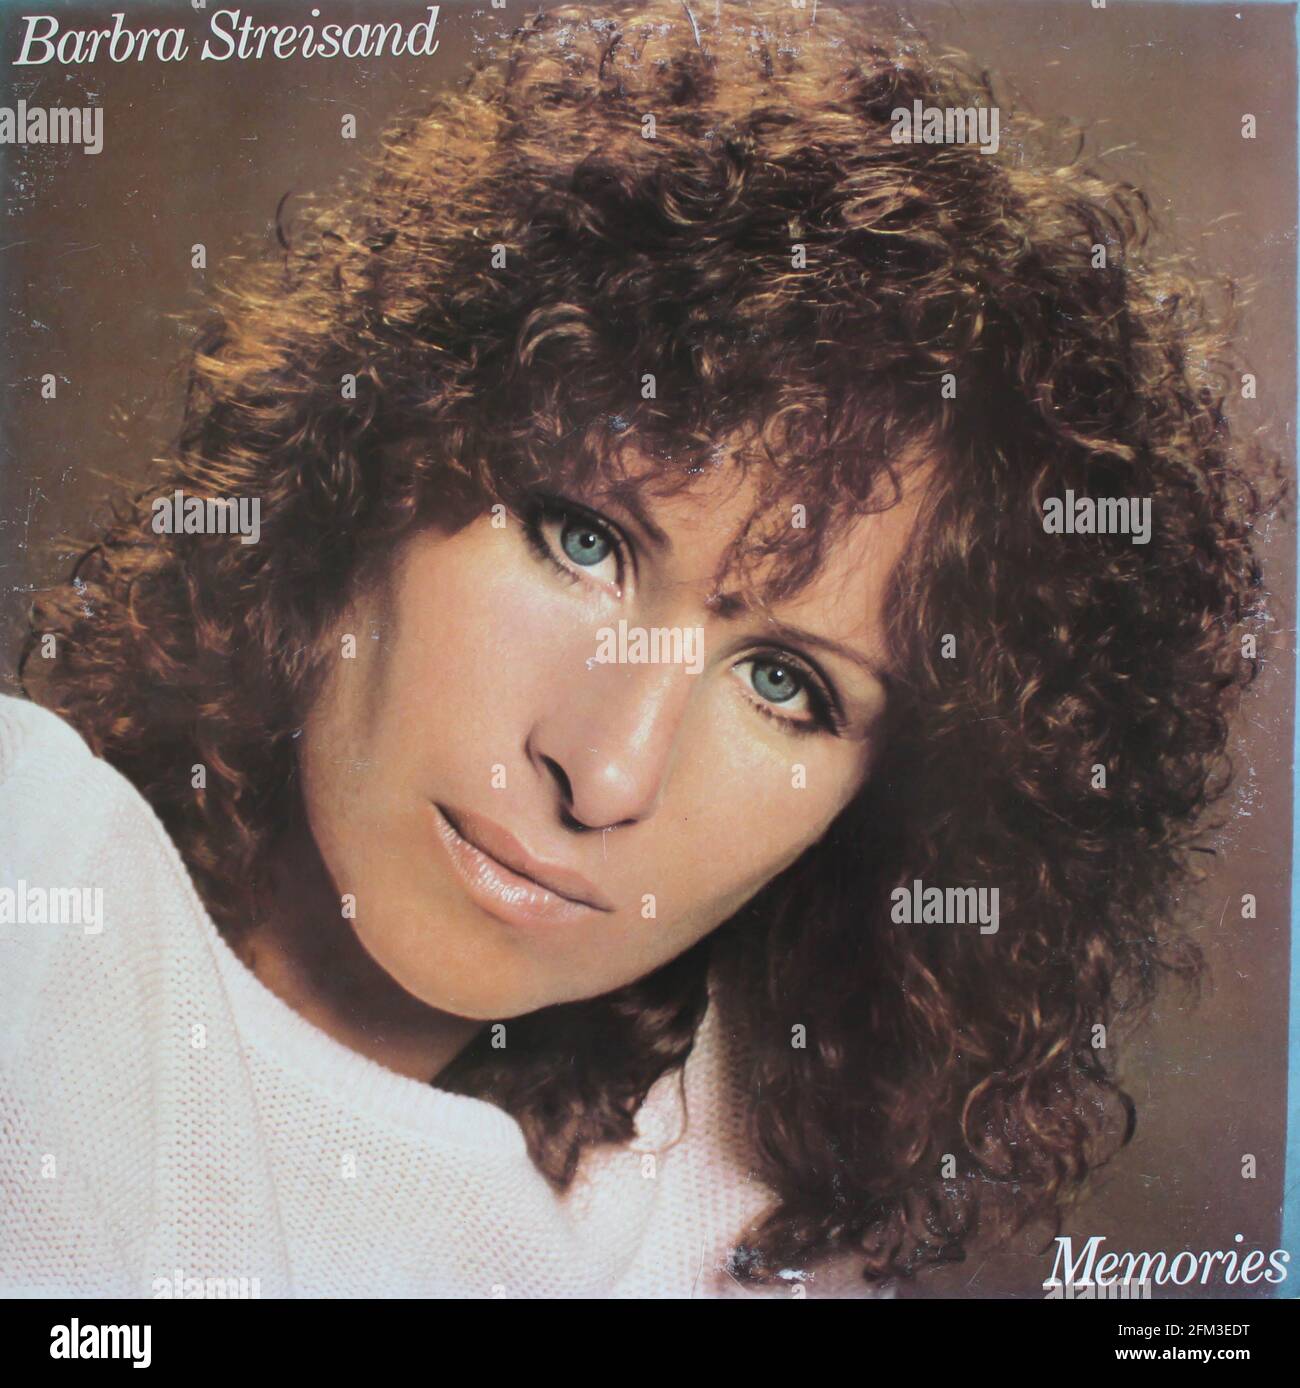 Pop artista, Barbra Streisand álbum de música en disco LP disco de vinilo. Título: Portada del álbum Memories Foto de stock